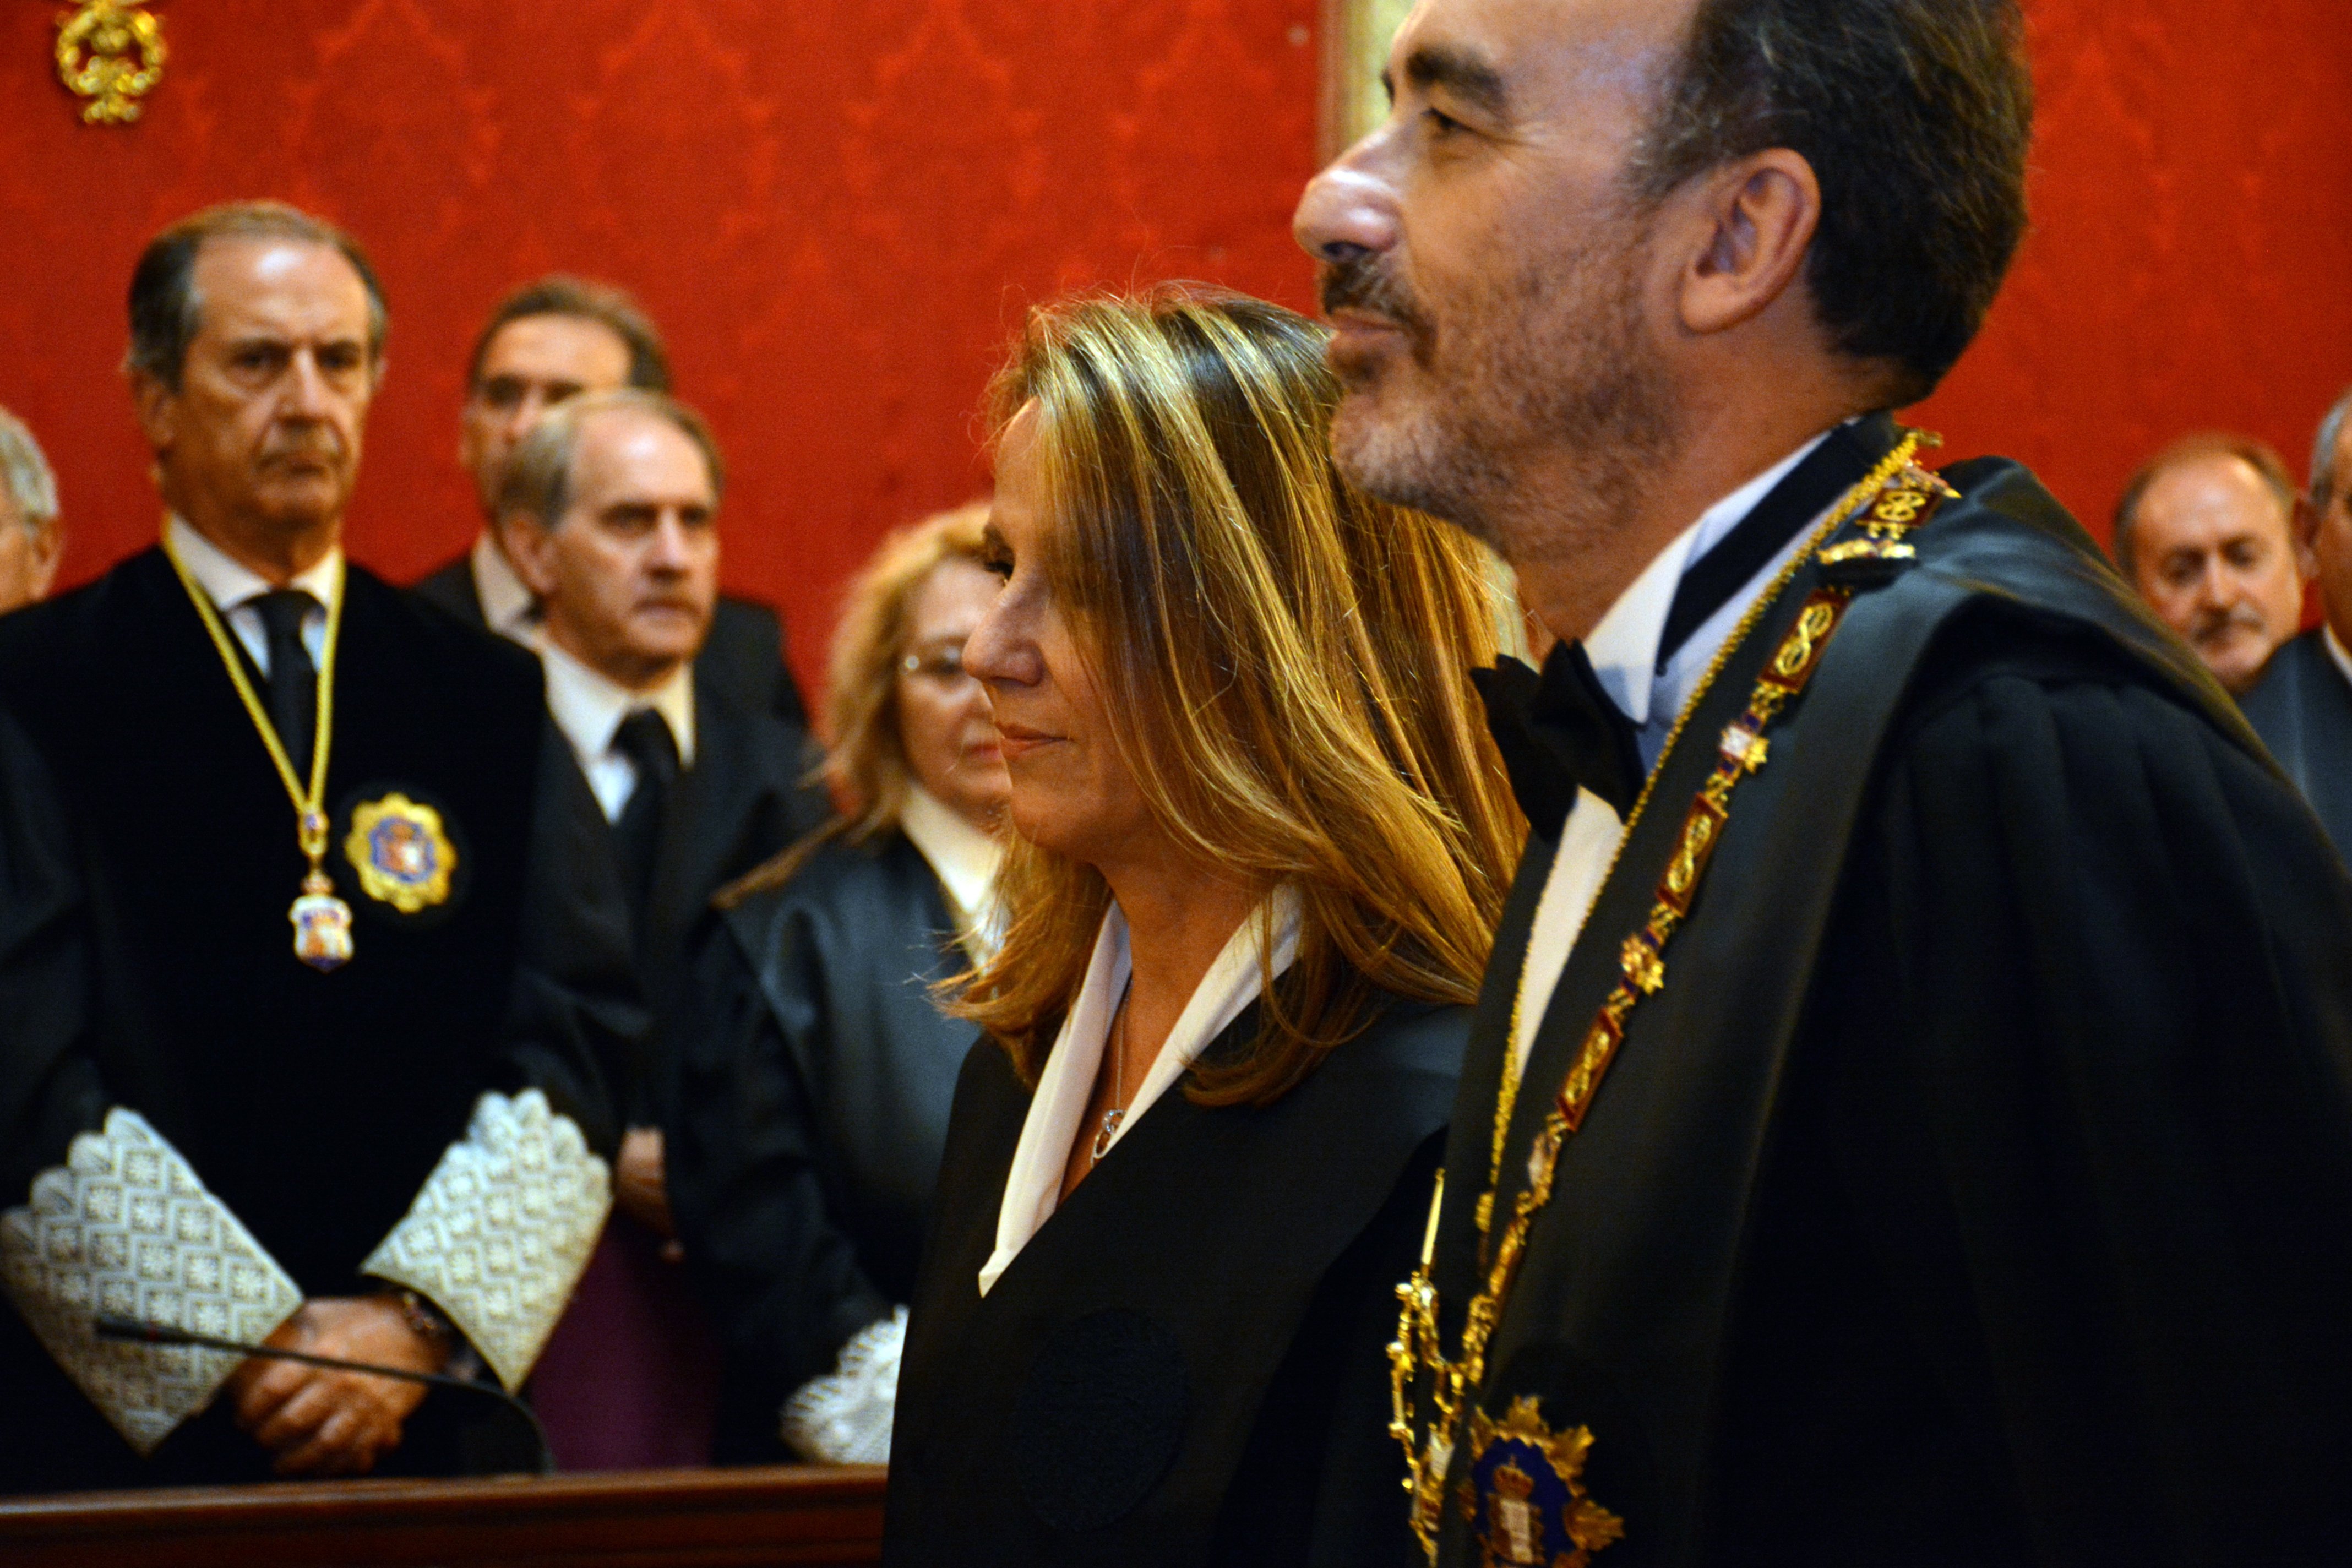 La asociación de jueces Francisco de Vitoria recurrirá el nombramiento de Marchena al CGPJ